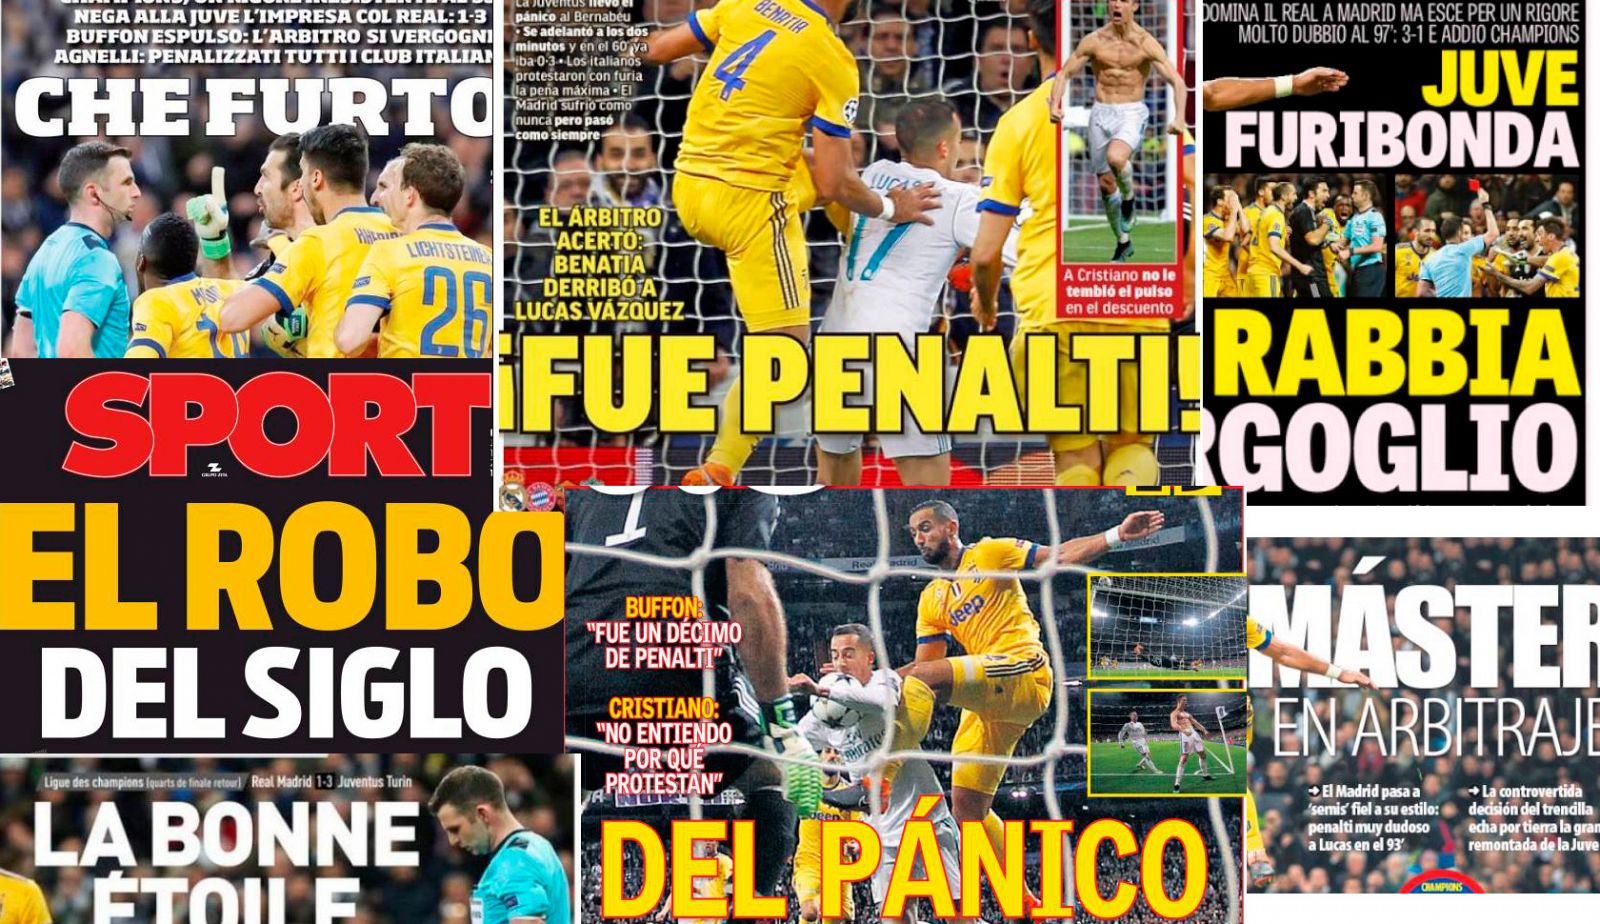 La prensa destaca el 'penalti dudoso' que dio el pase al Madrid